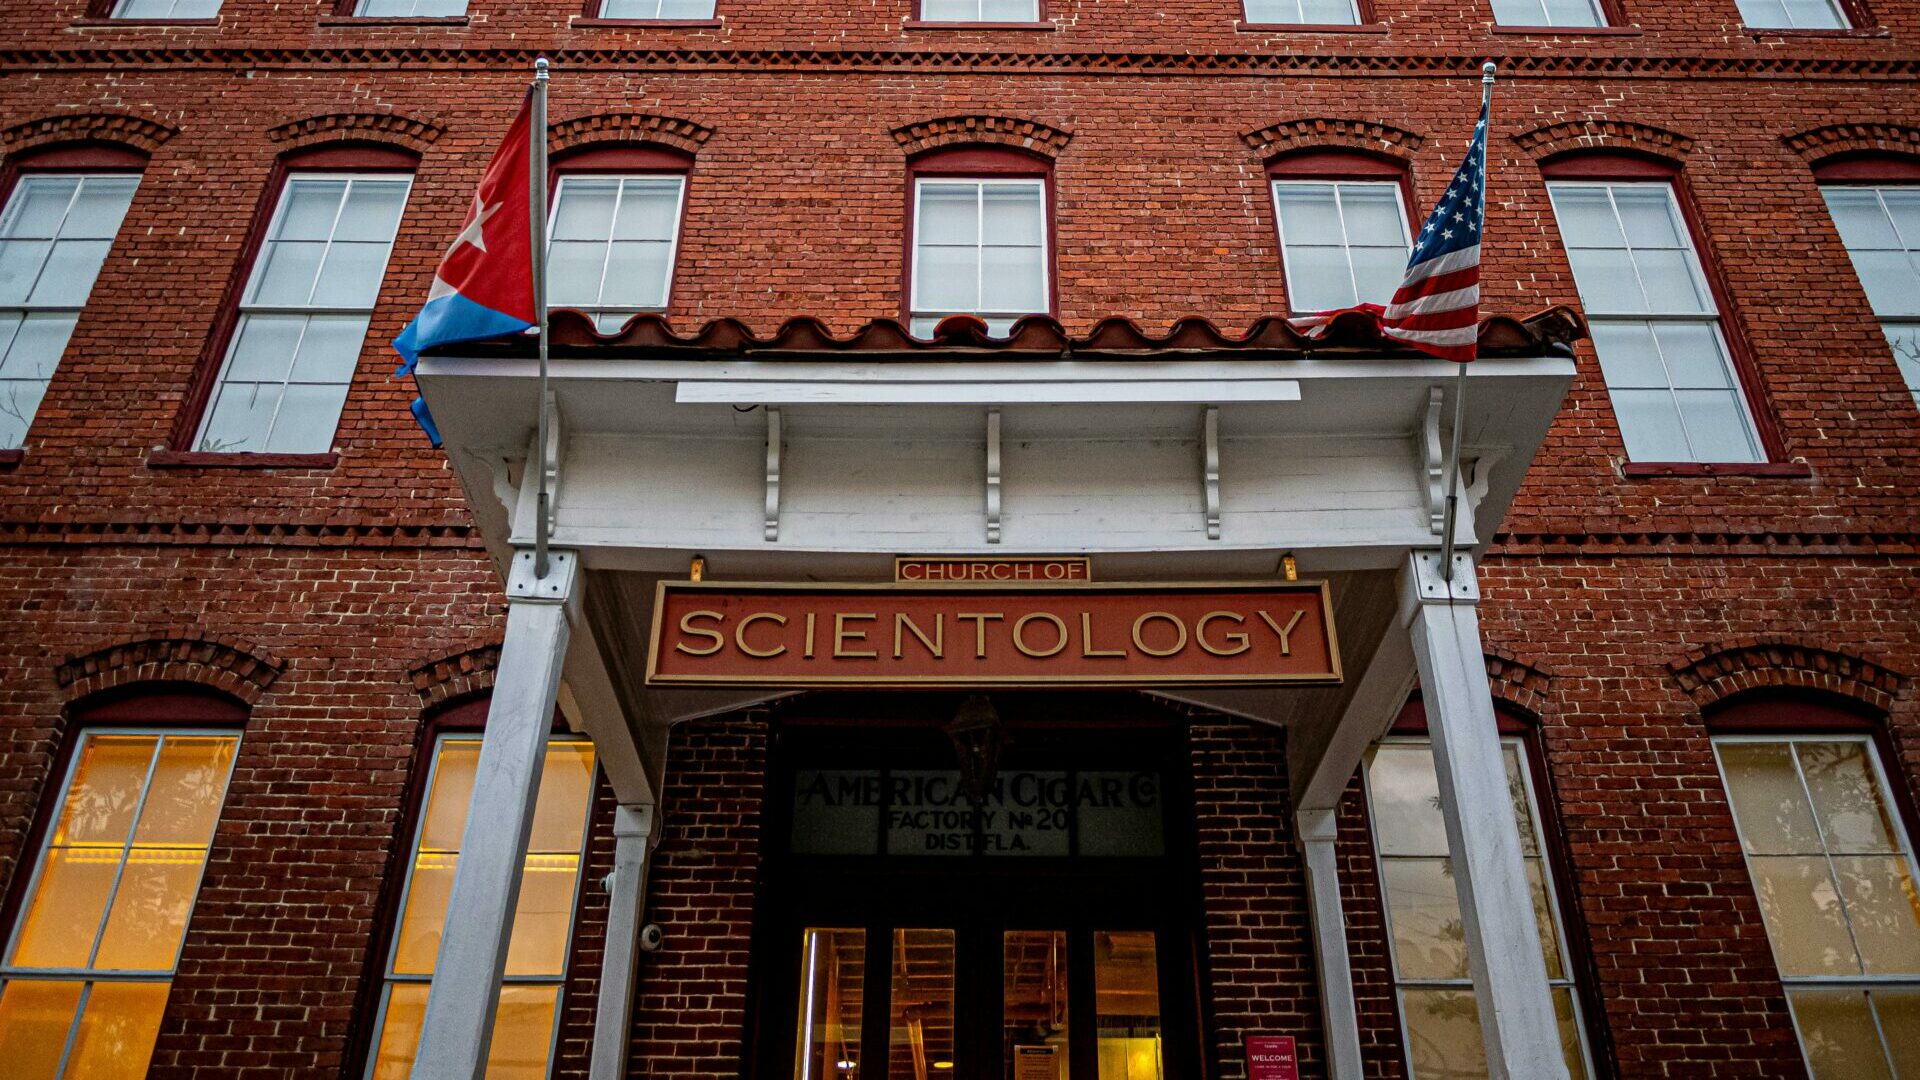 L'église de scientologie ouvre un centre de formation à deux pas des sites olympiques